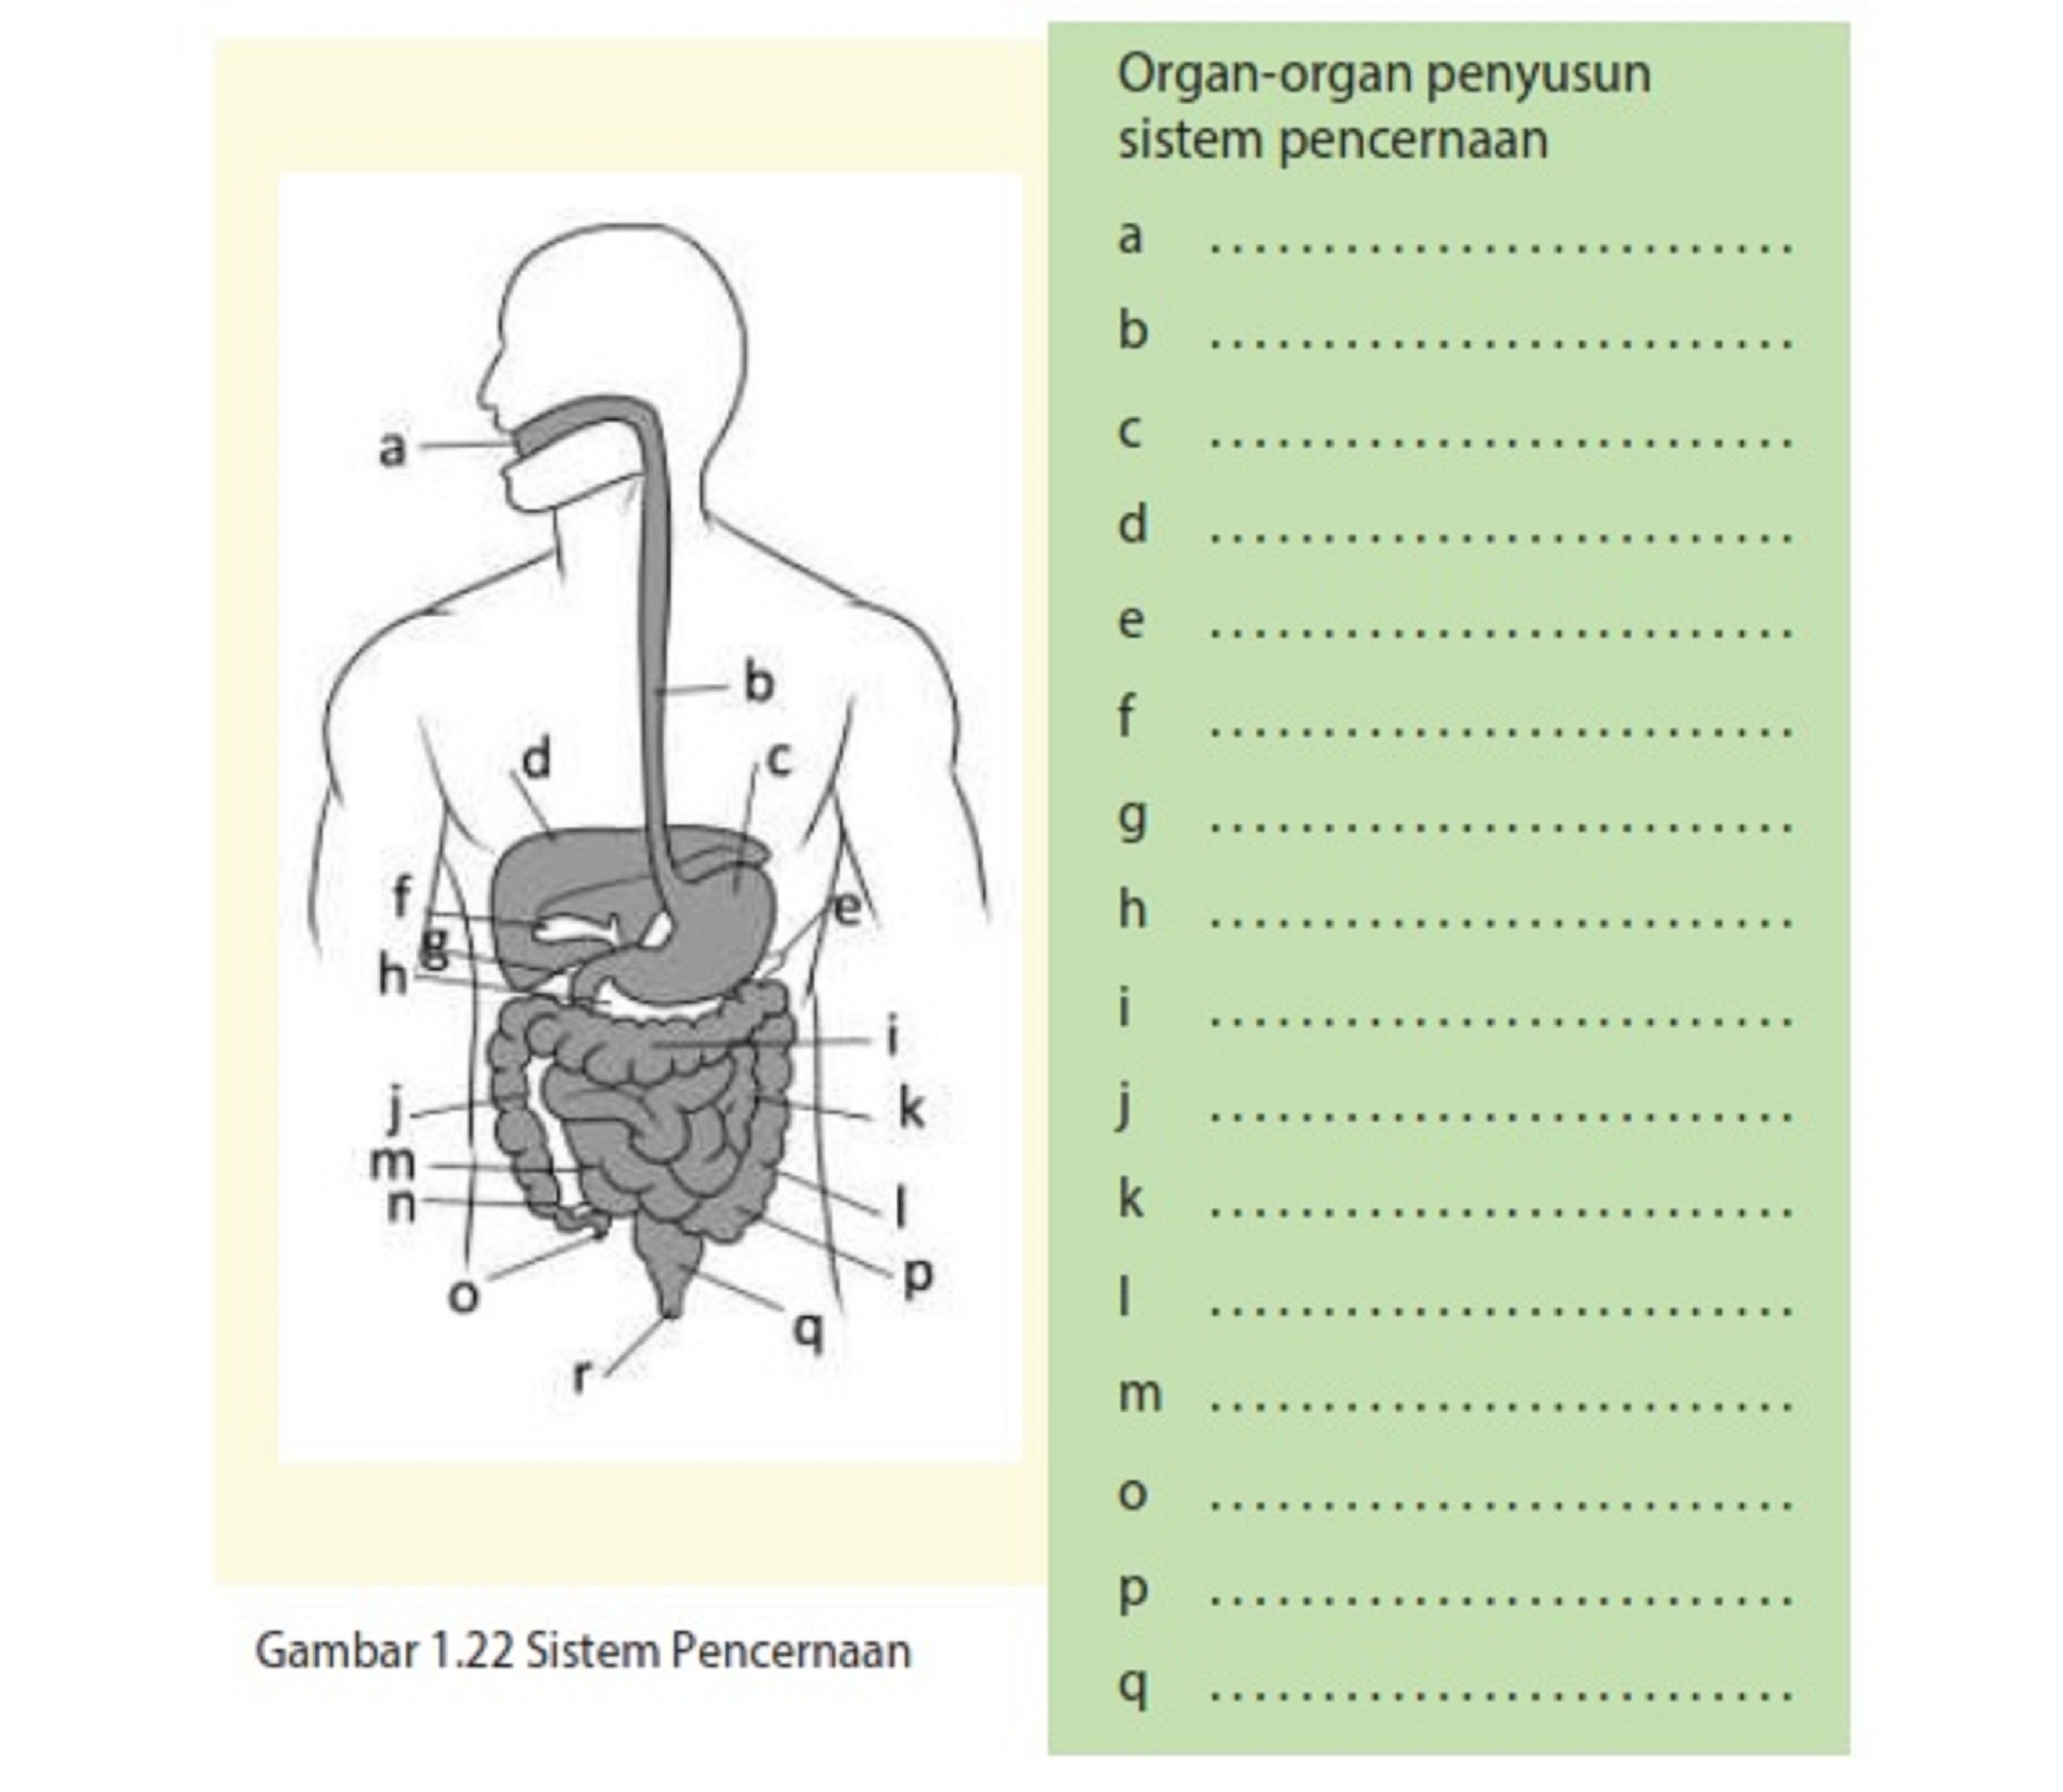 Fungsi sistem organ sesuai gambar adalah